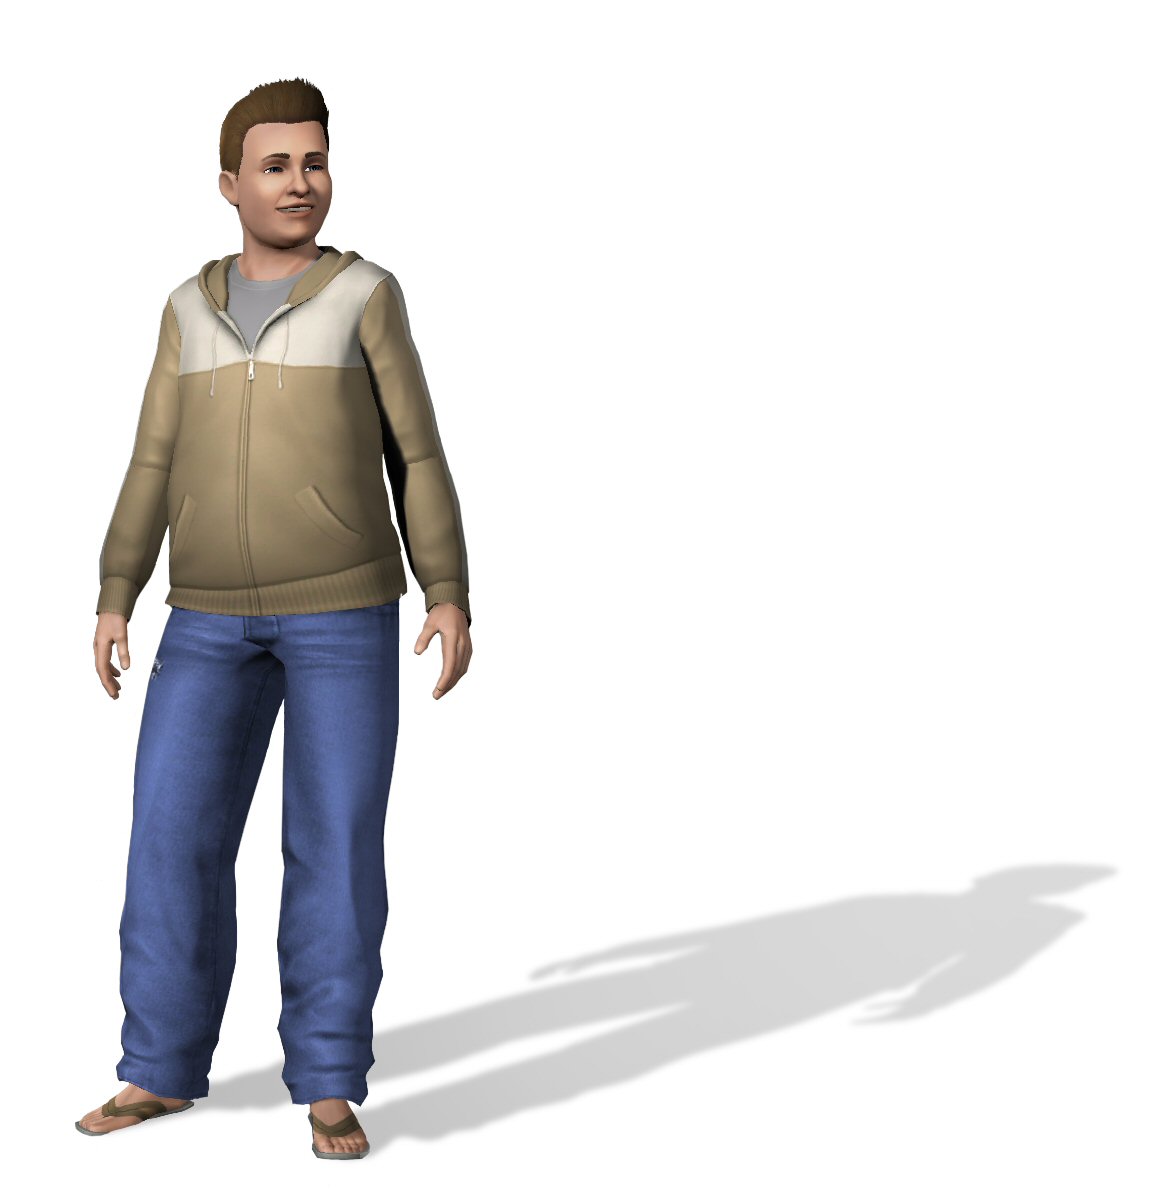 Die Sims 3 - Shot 7